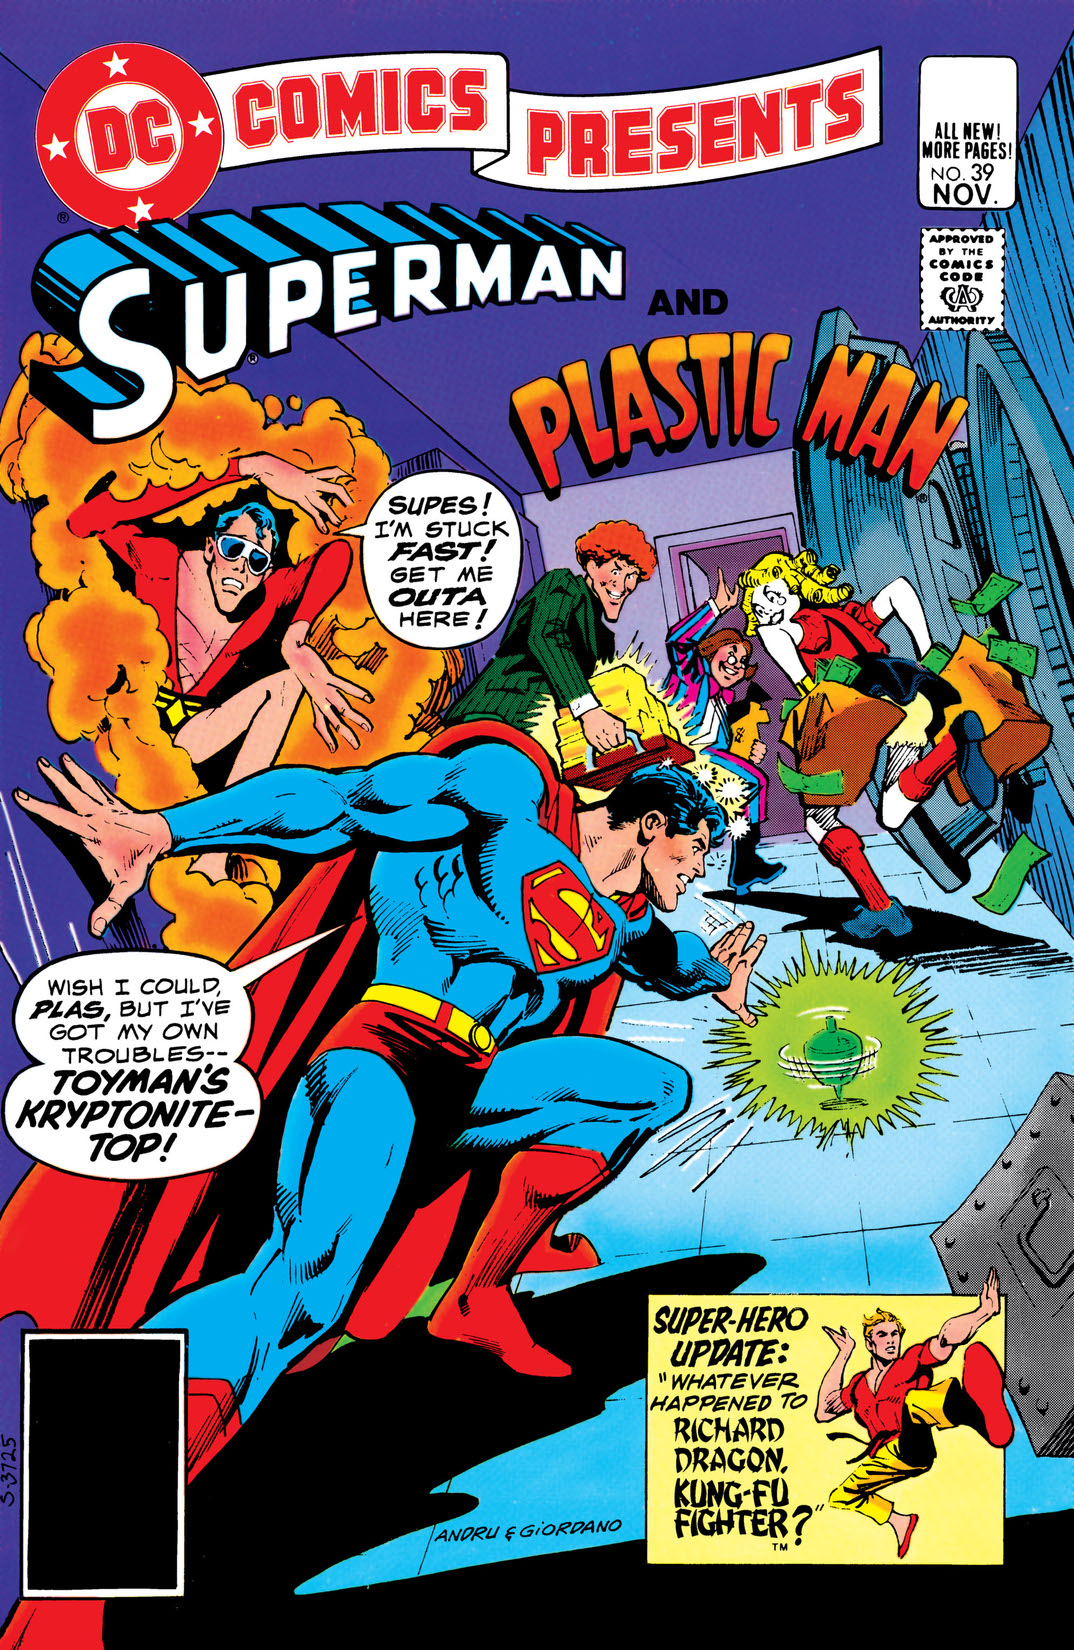 DC Comics Presents (1978-) #39 preview images